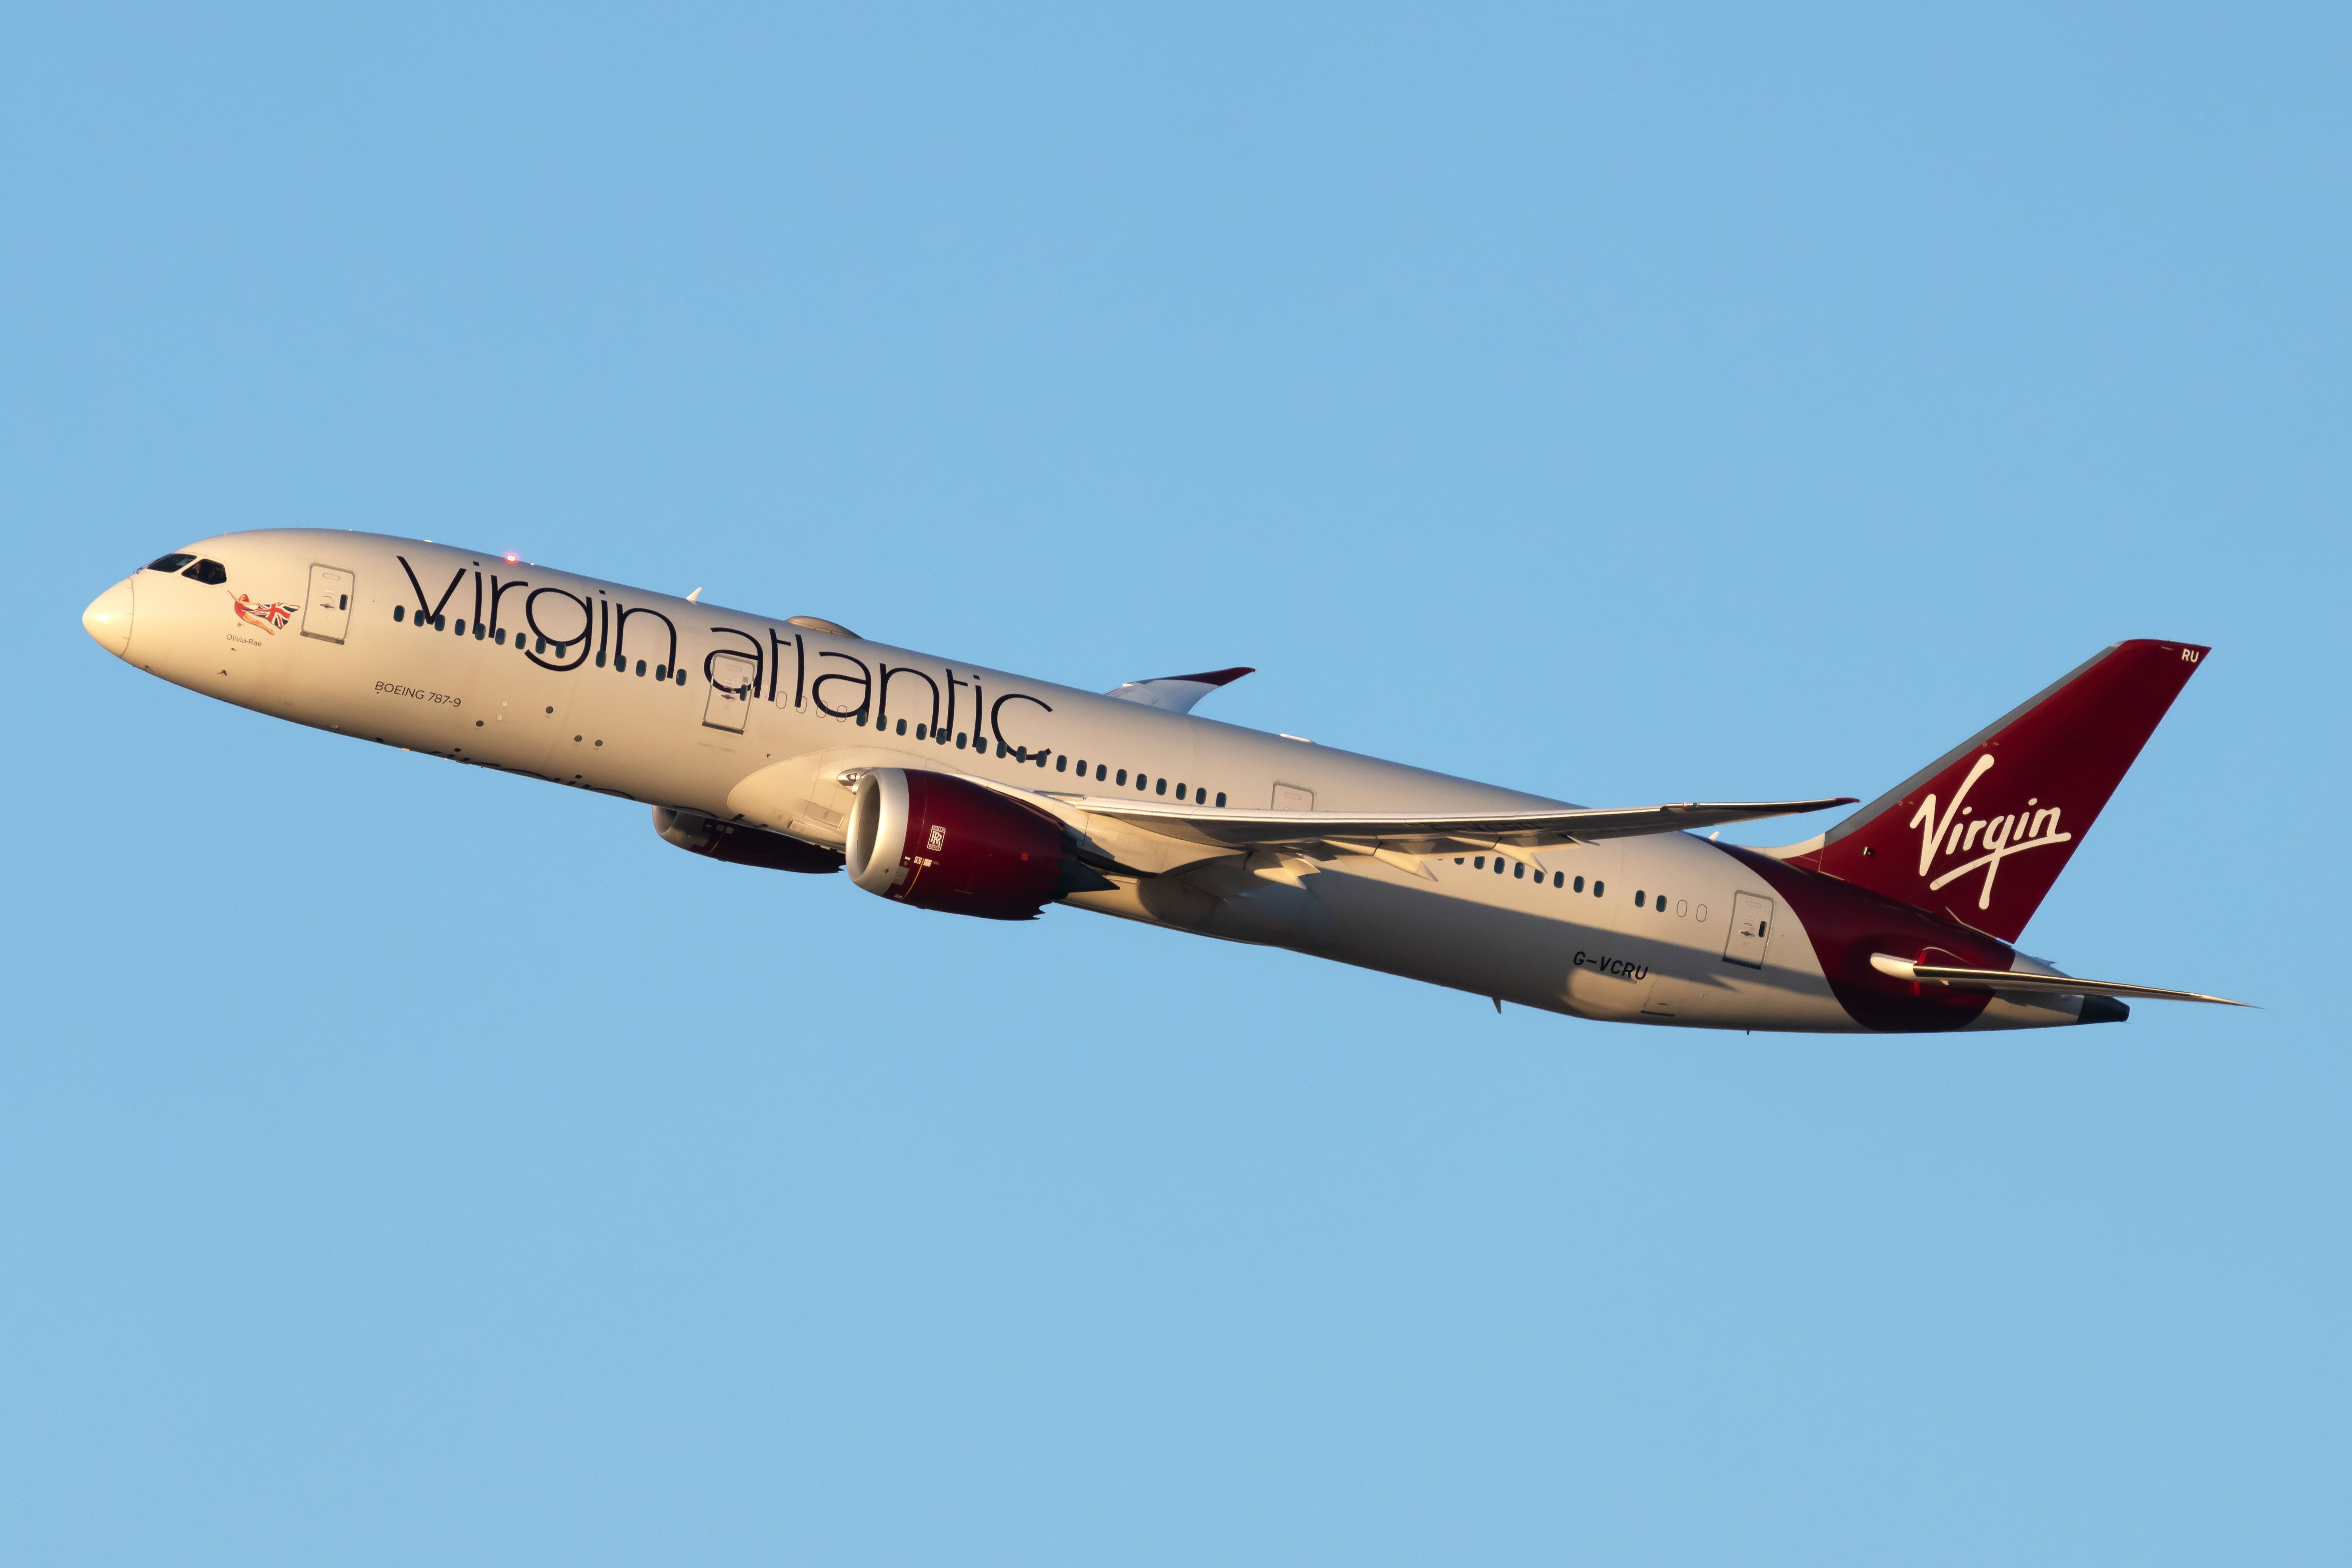 A Virgin Atlantic Boeing 787 Flying in the sky.